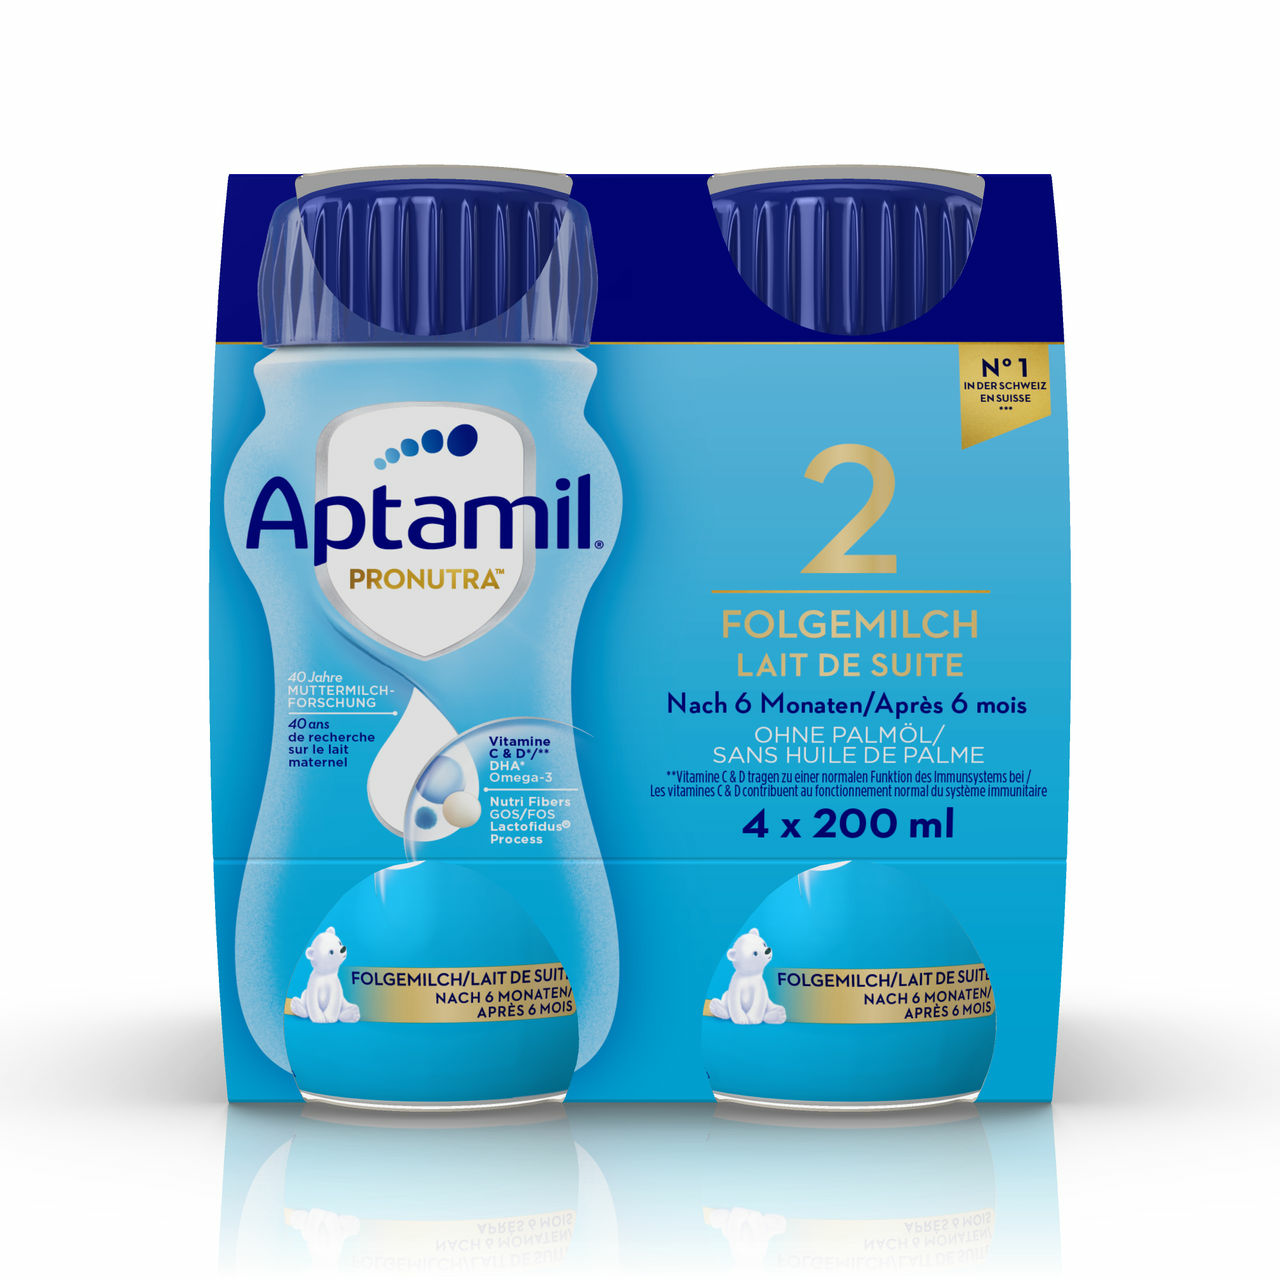 Aptamil 4 Formule de poudre de lait pour bébé Maroc